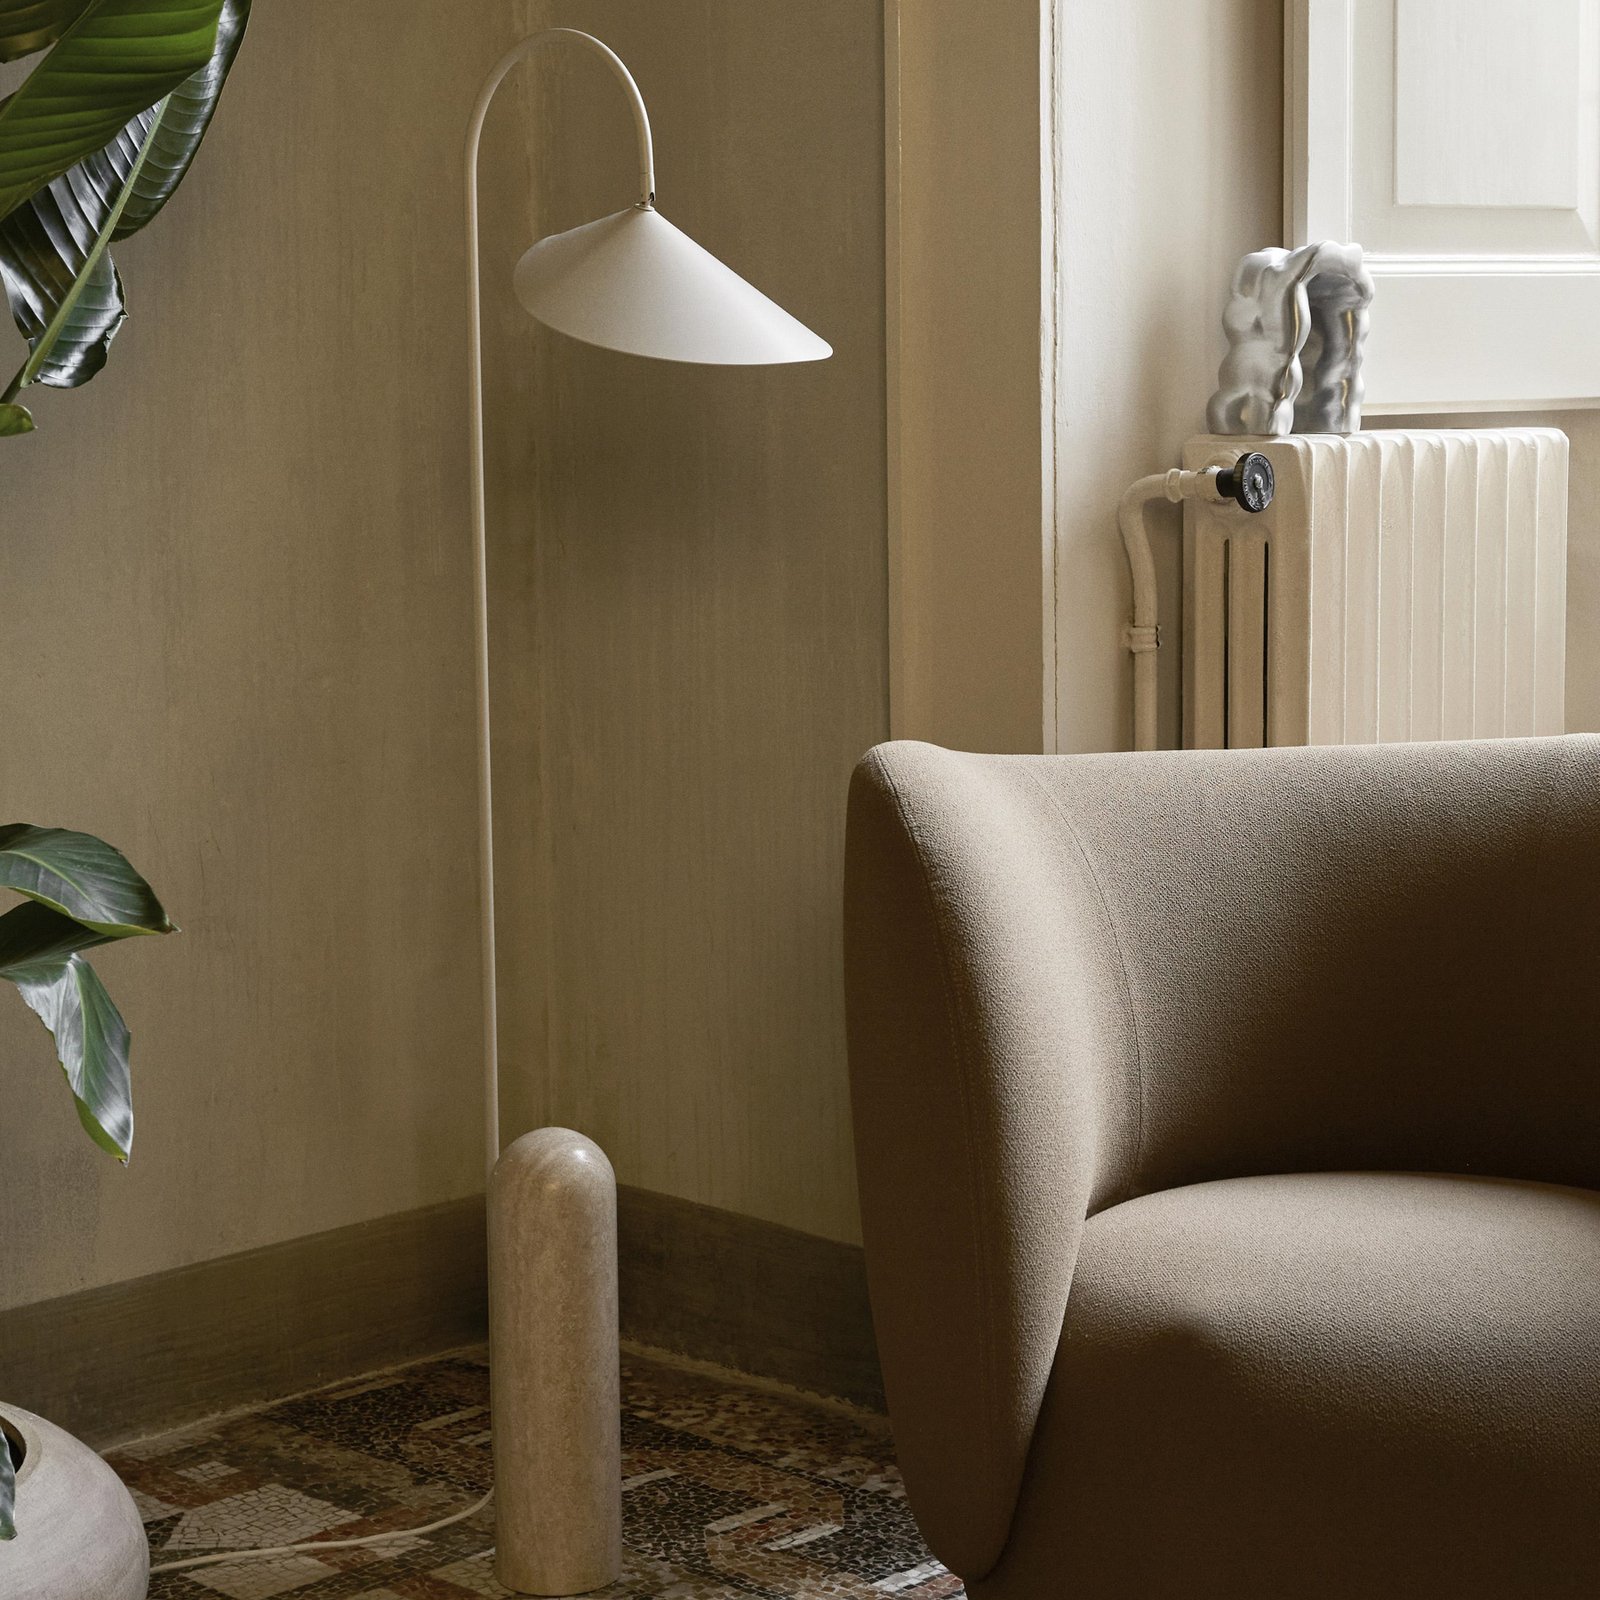 ferm LIVING lampe sur pied Arum, beige, marbre, acier, 136 cm